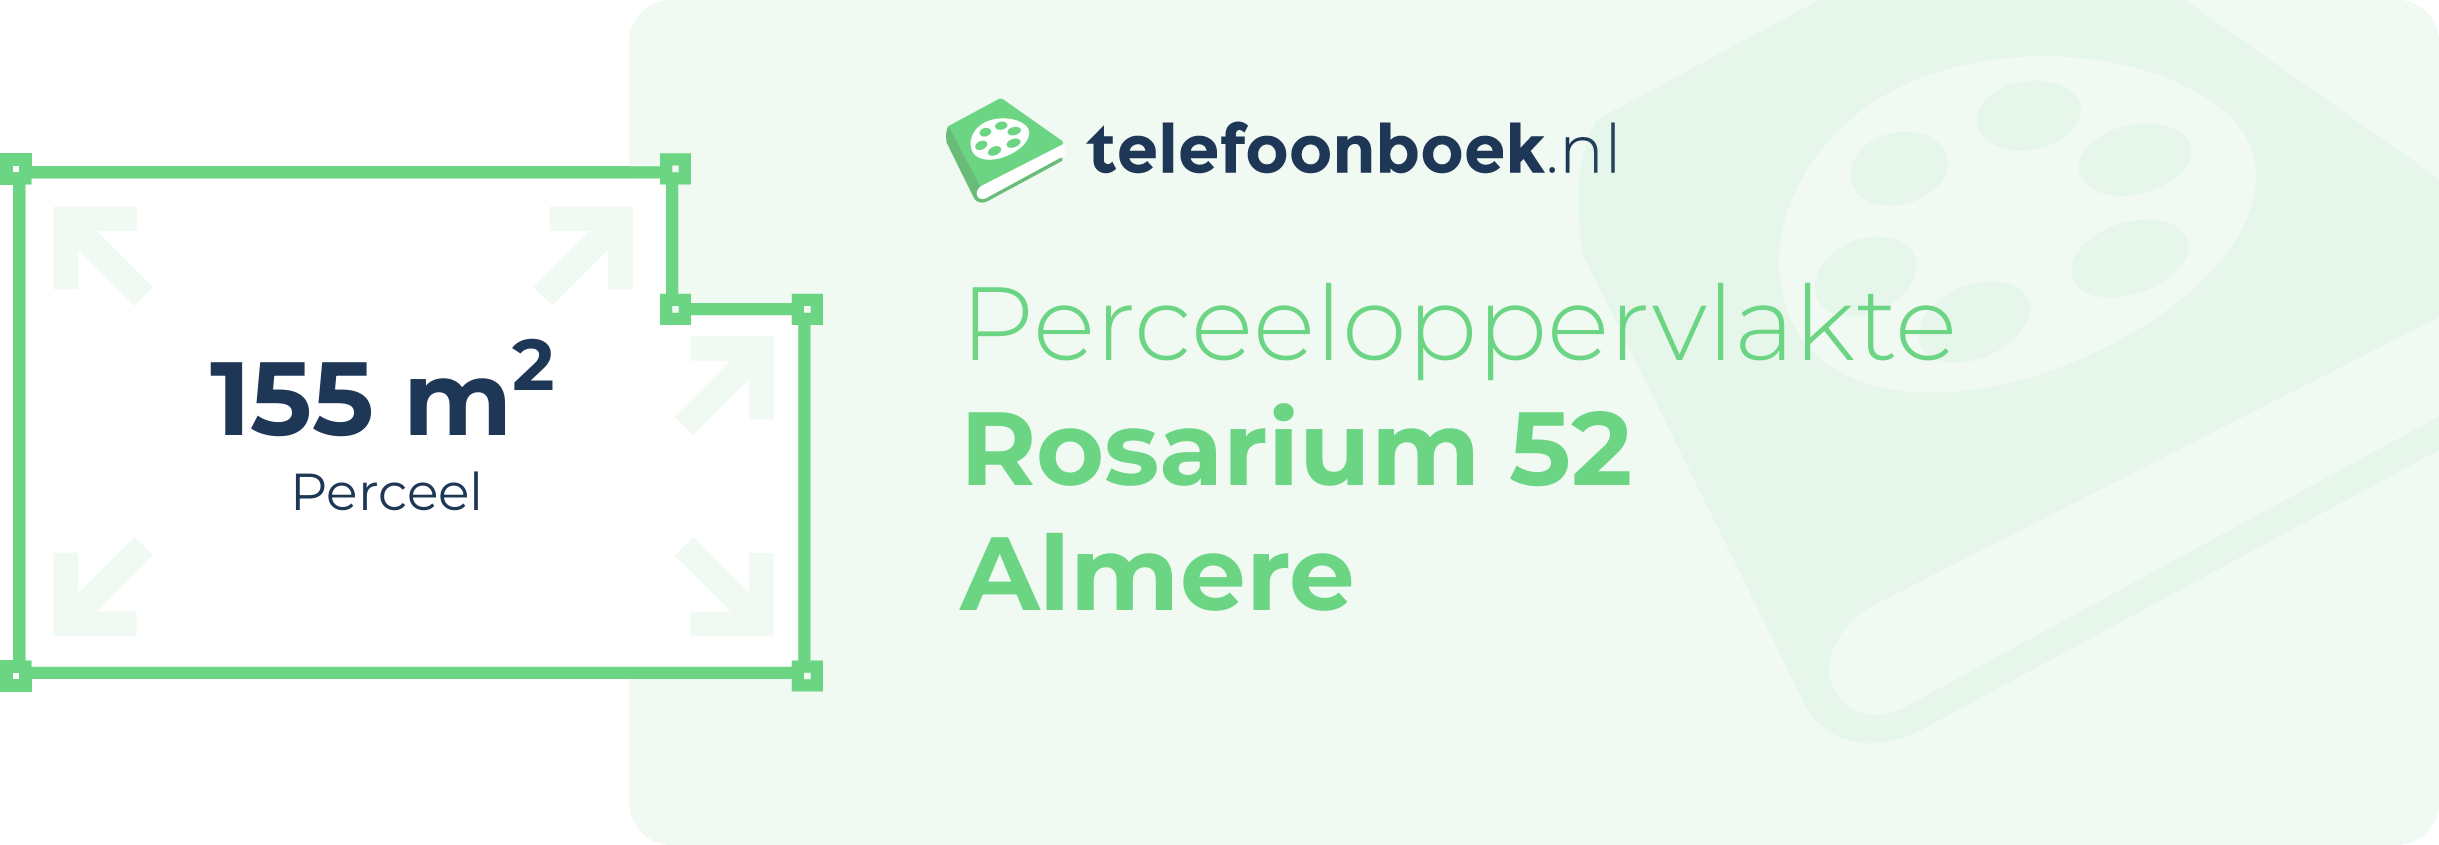 Perceeloppervlakte Rosarium 52 Almere